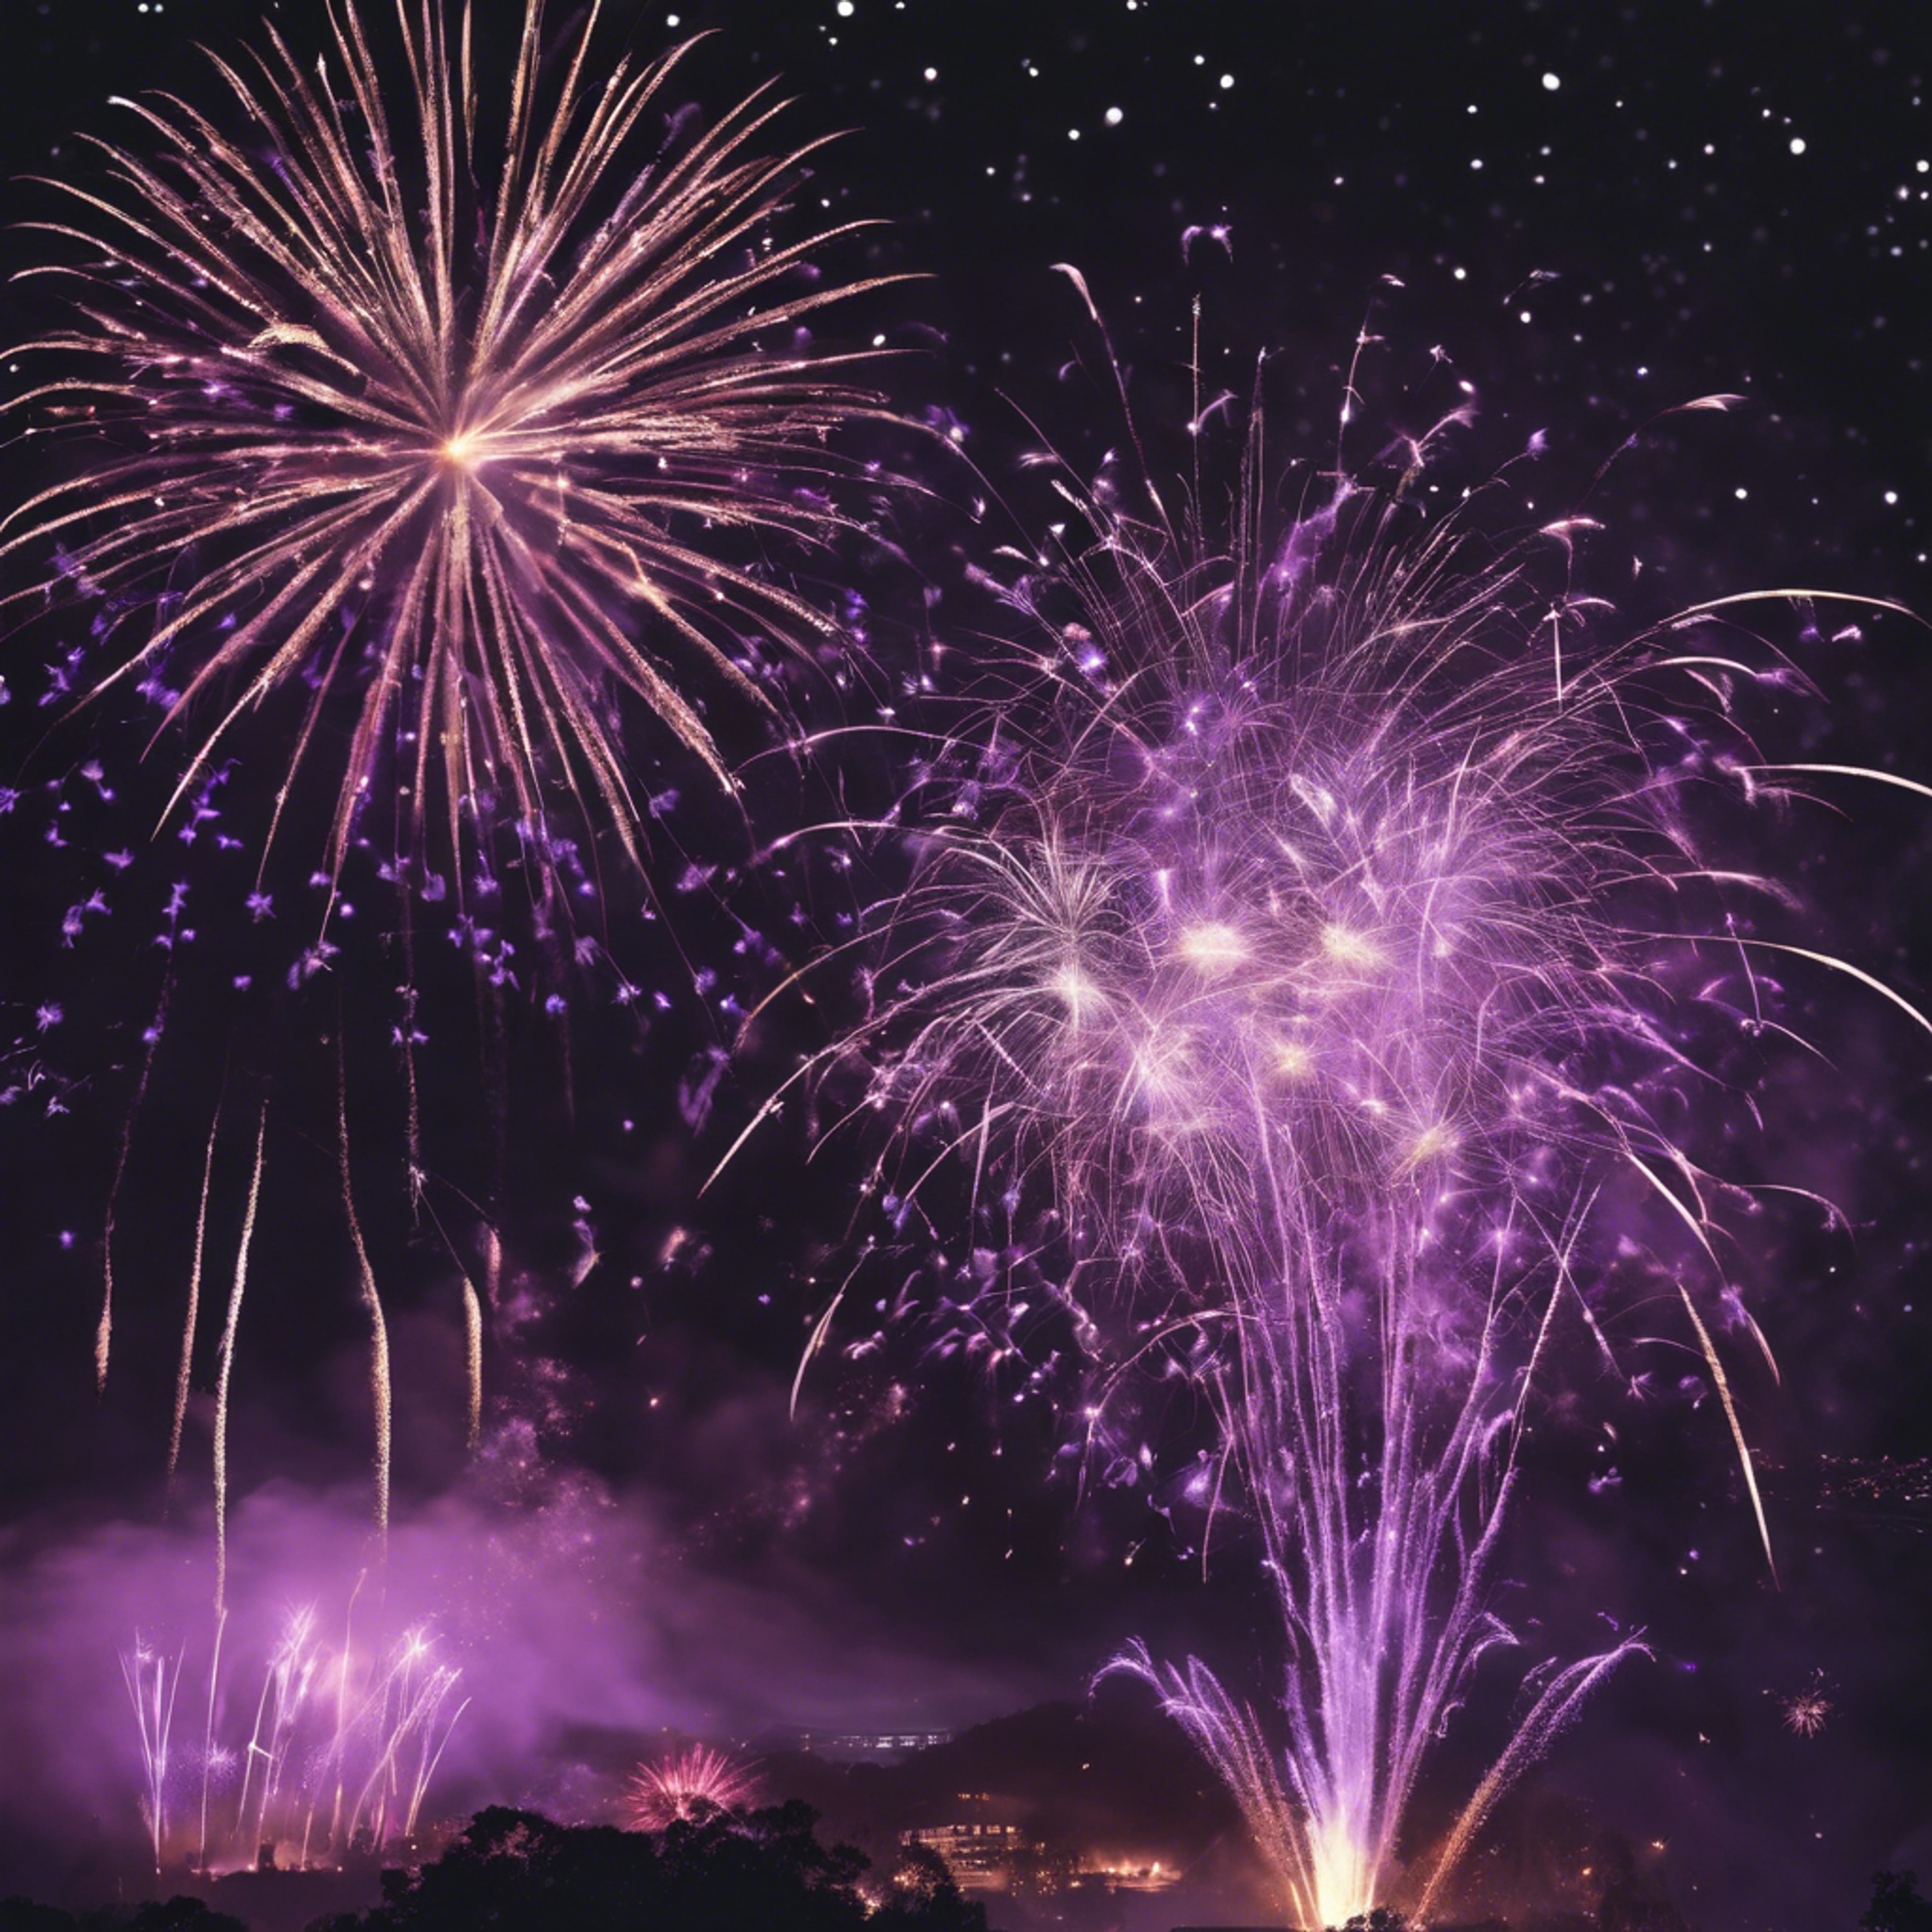 Black and purple fireworks lighting up the night sky during a grand celebration. Fondo de pantalla[a63540e6fc8e4a549ec0]